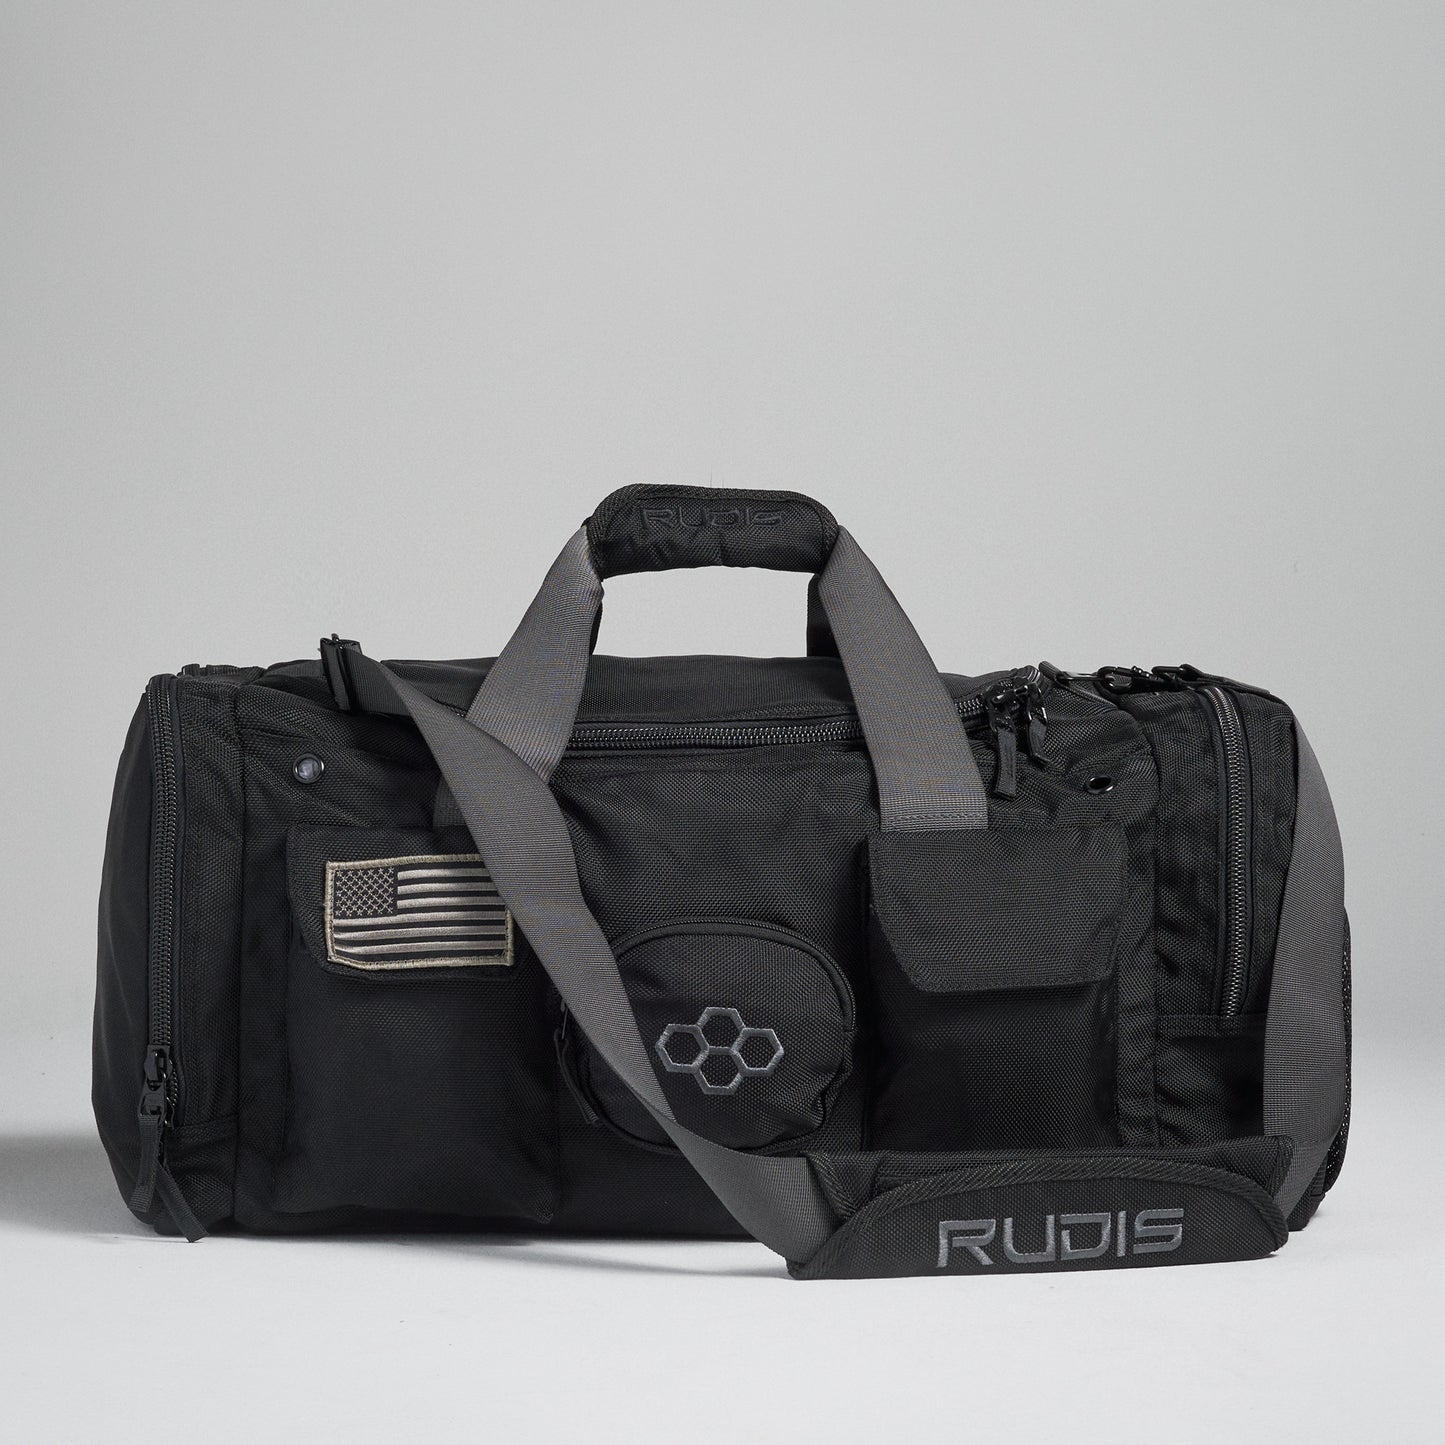 RUDIS 4082 Duffel Bag - Black